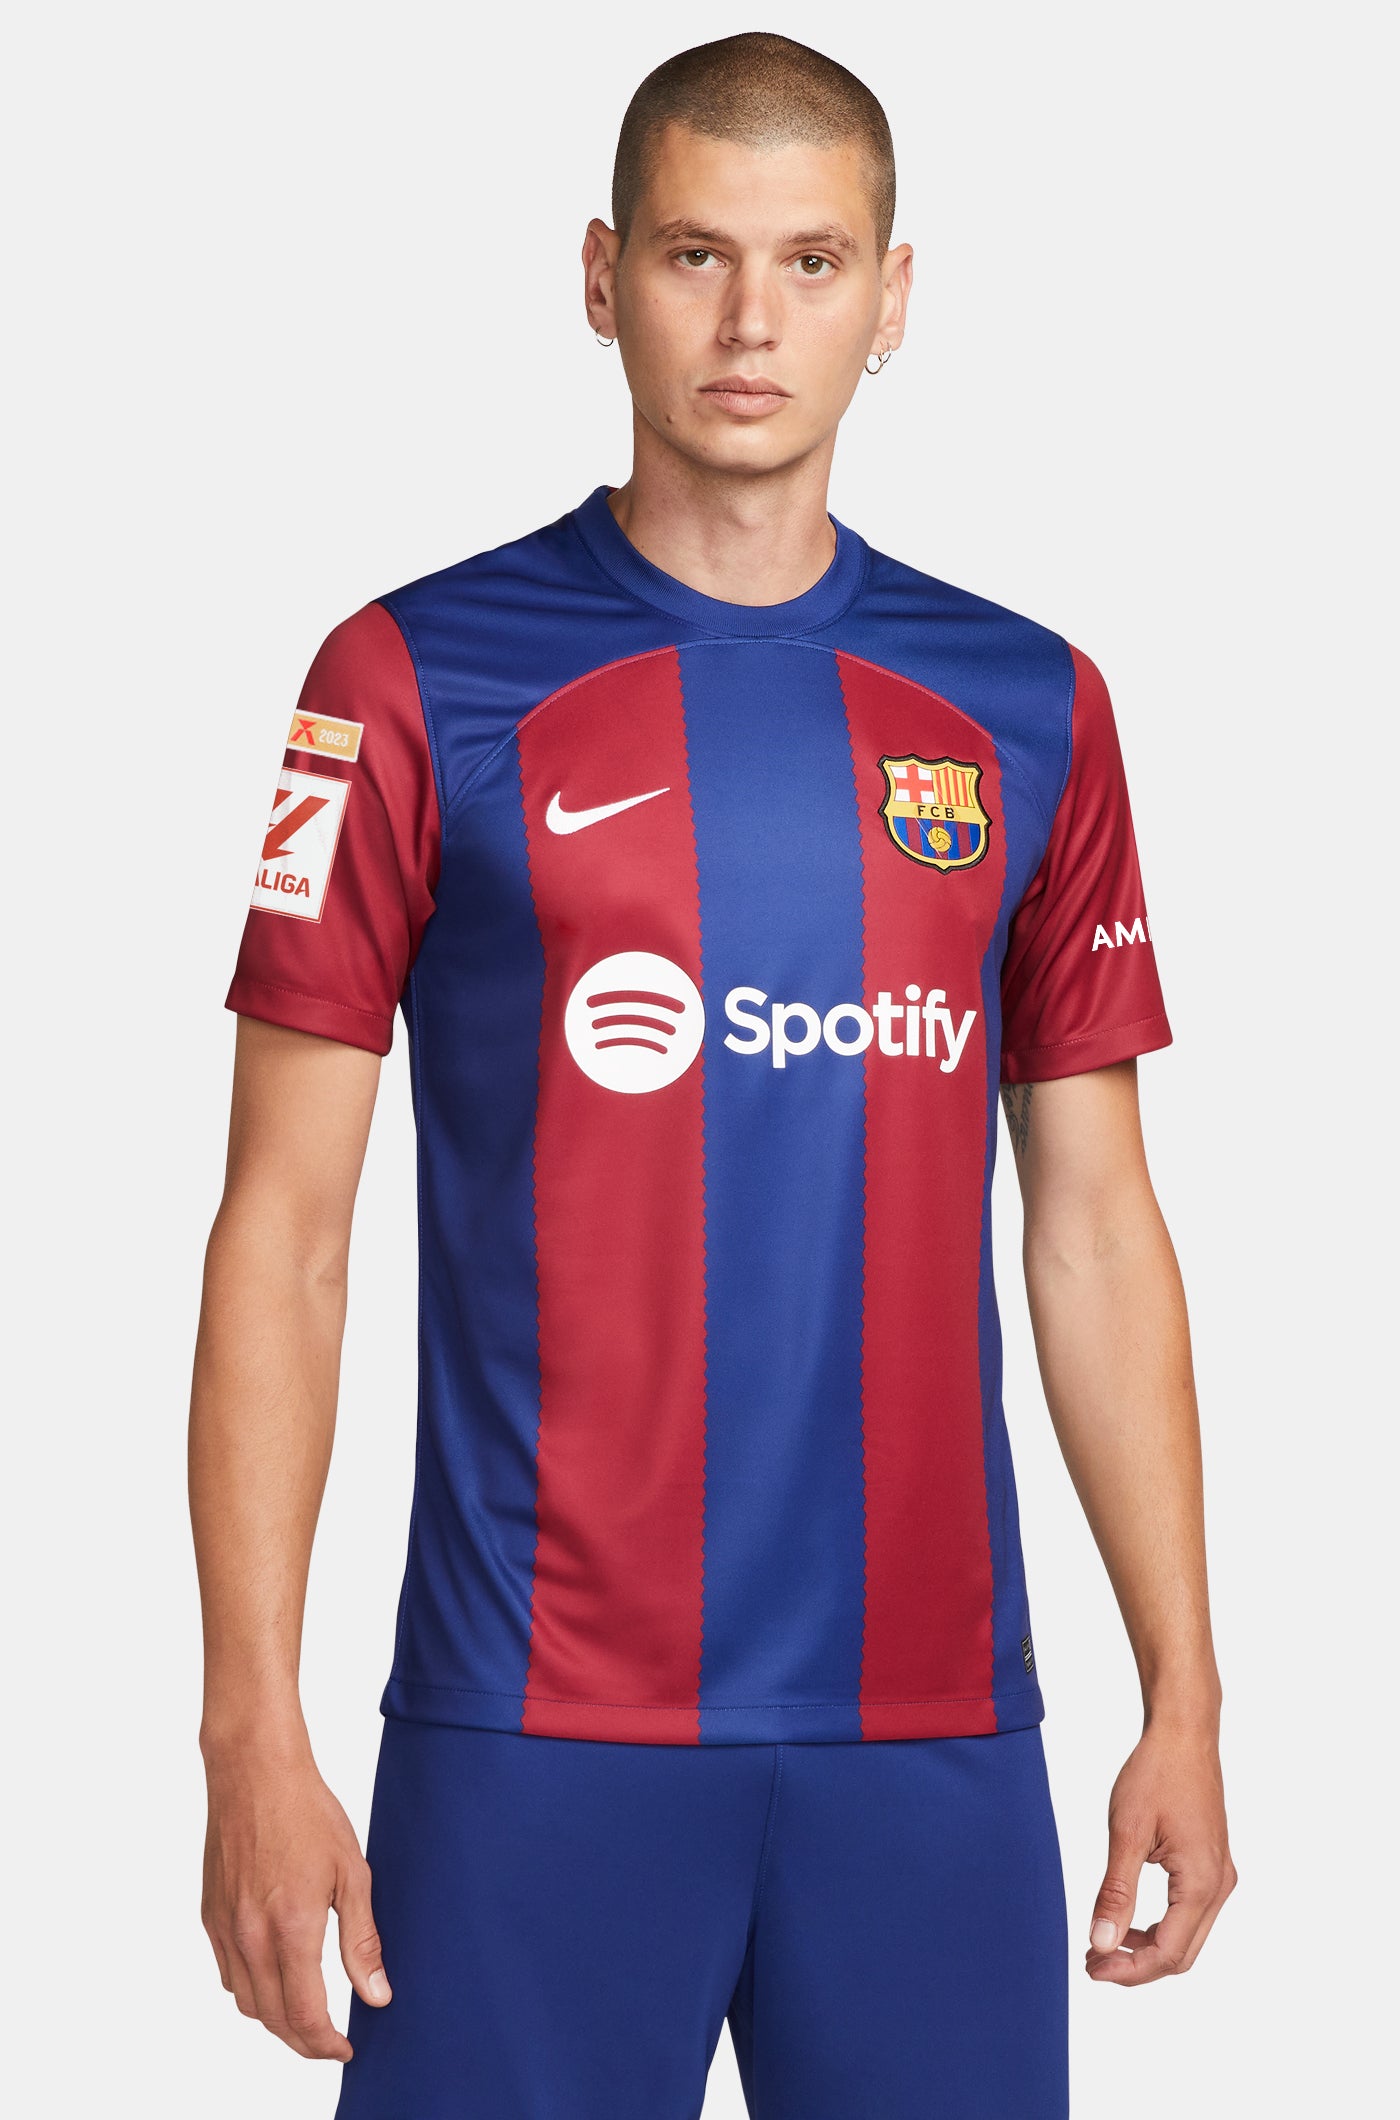 LFP FC Barcelona home shirt 23/24  - I. MARTÍNEZ